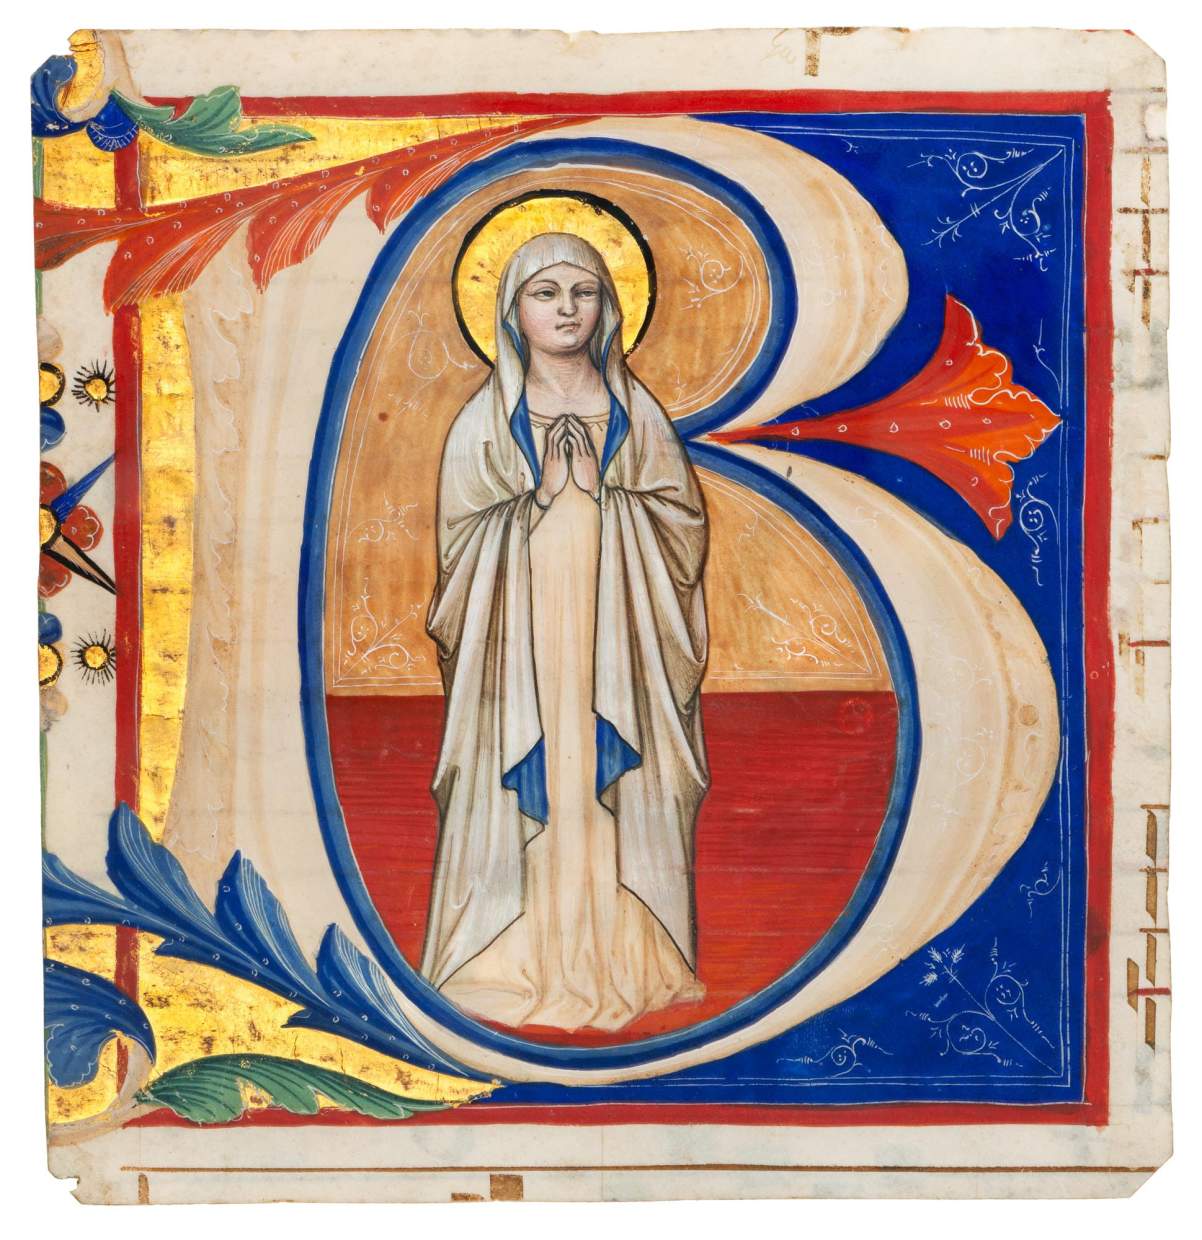 A young Virgin Mary at Prayer